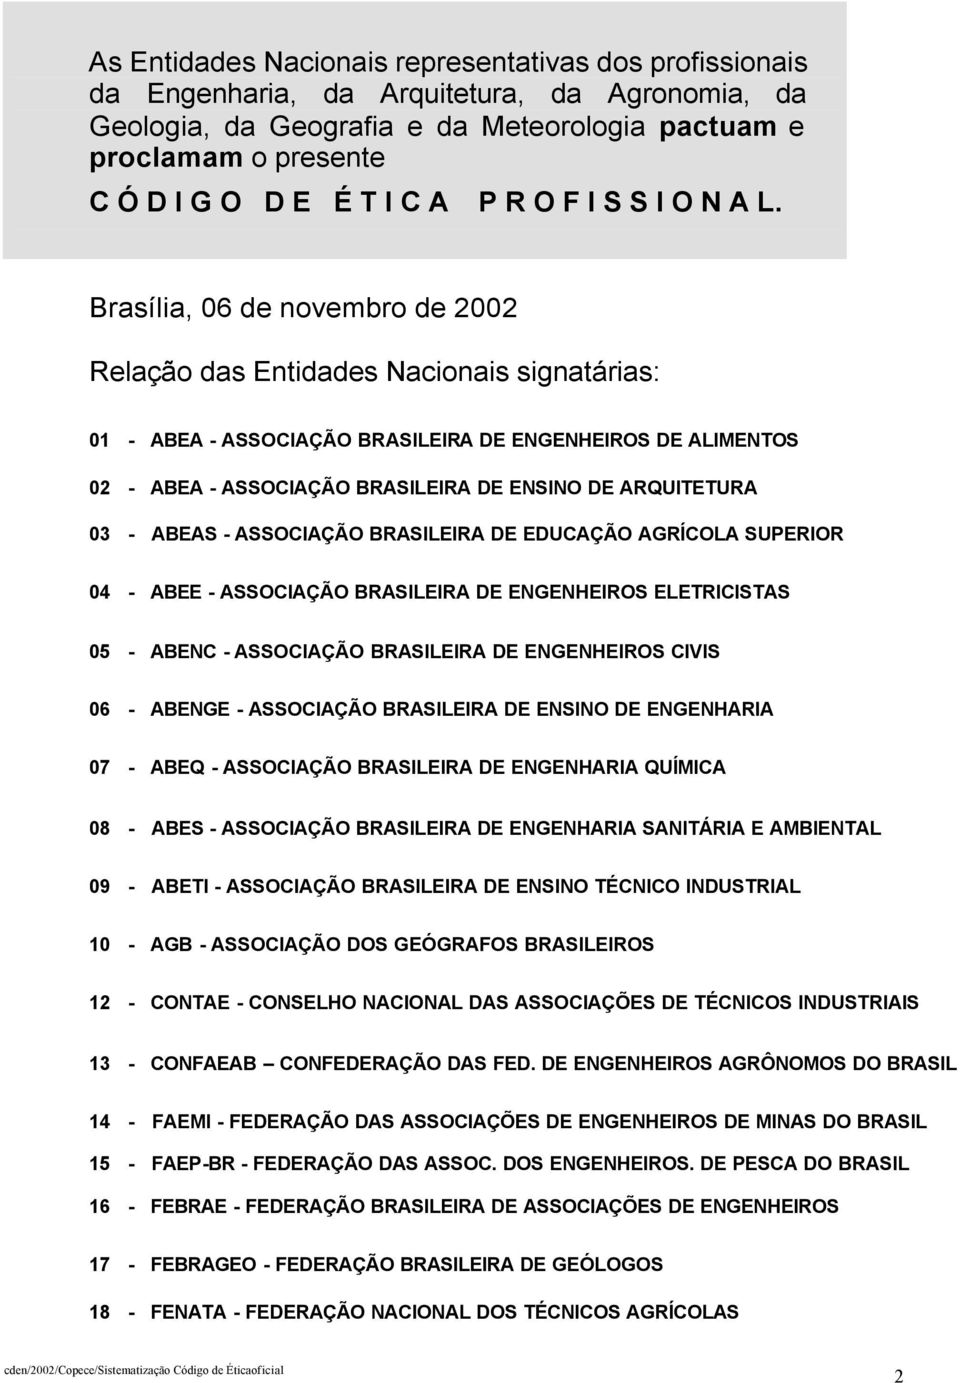 Brasília, 06 de novembro de 2002 Relação das Entidades Nacionais signatárias: 01 - ABEA - ASSOCIAÇÃO BRASILEIRA DE ENGENHEIROS DE ALIMENTOS 02 - ABEA - ASSOCIAÇÃO BRASILEIRA DE ENSINO DE ARQUITETURA